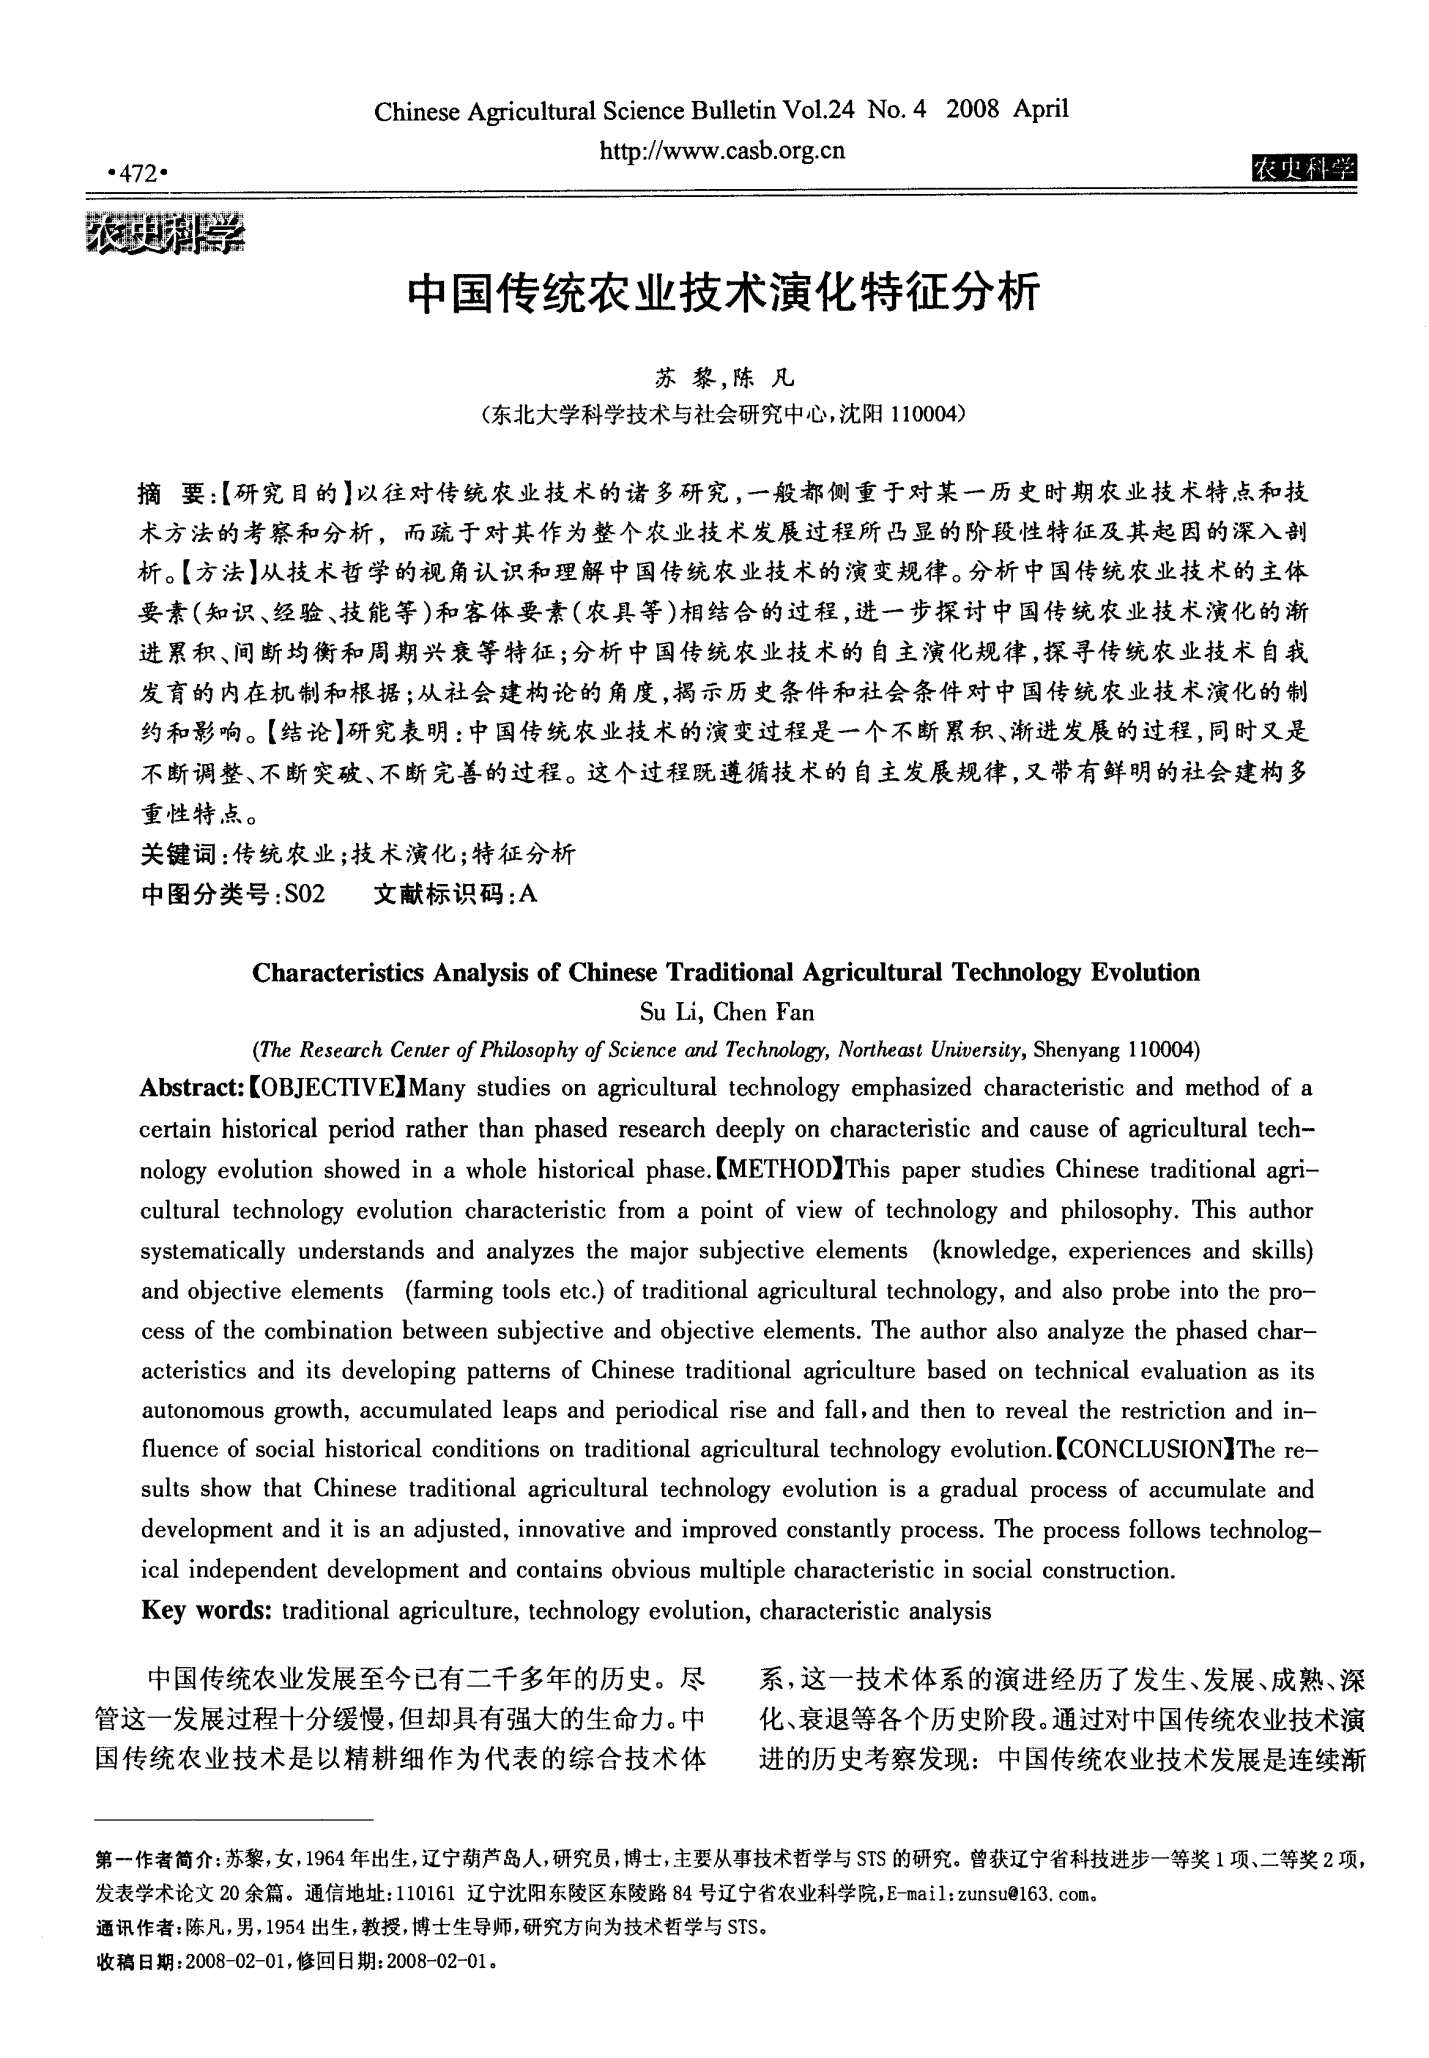 中国传统农业技术演化特征分析